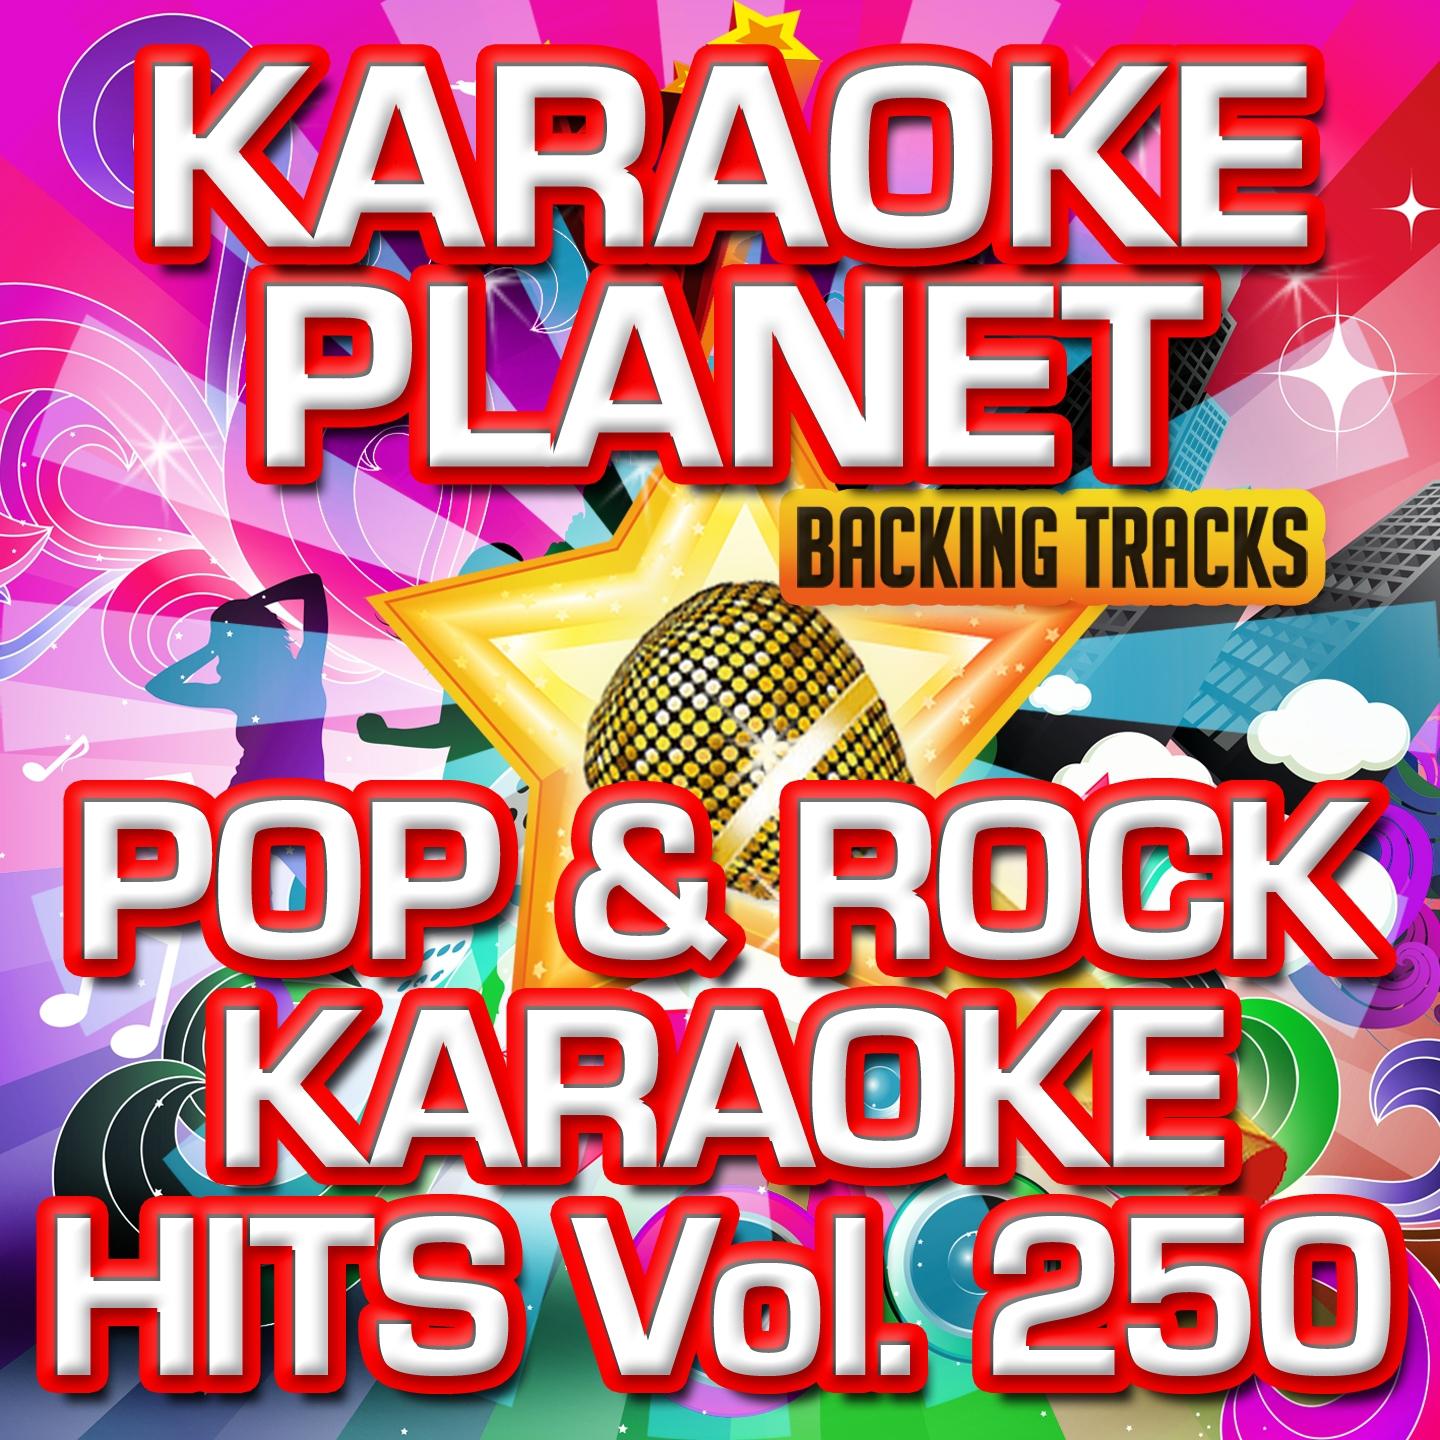 Pop & Rock Karaoke Hits, Vol. 250